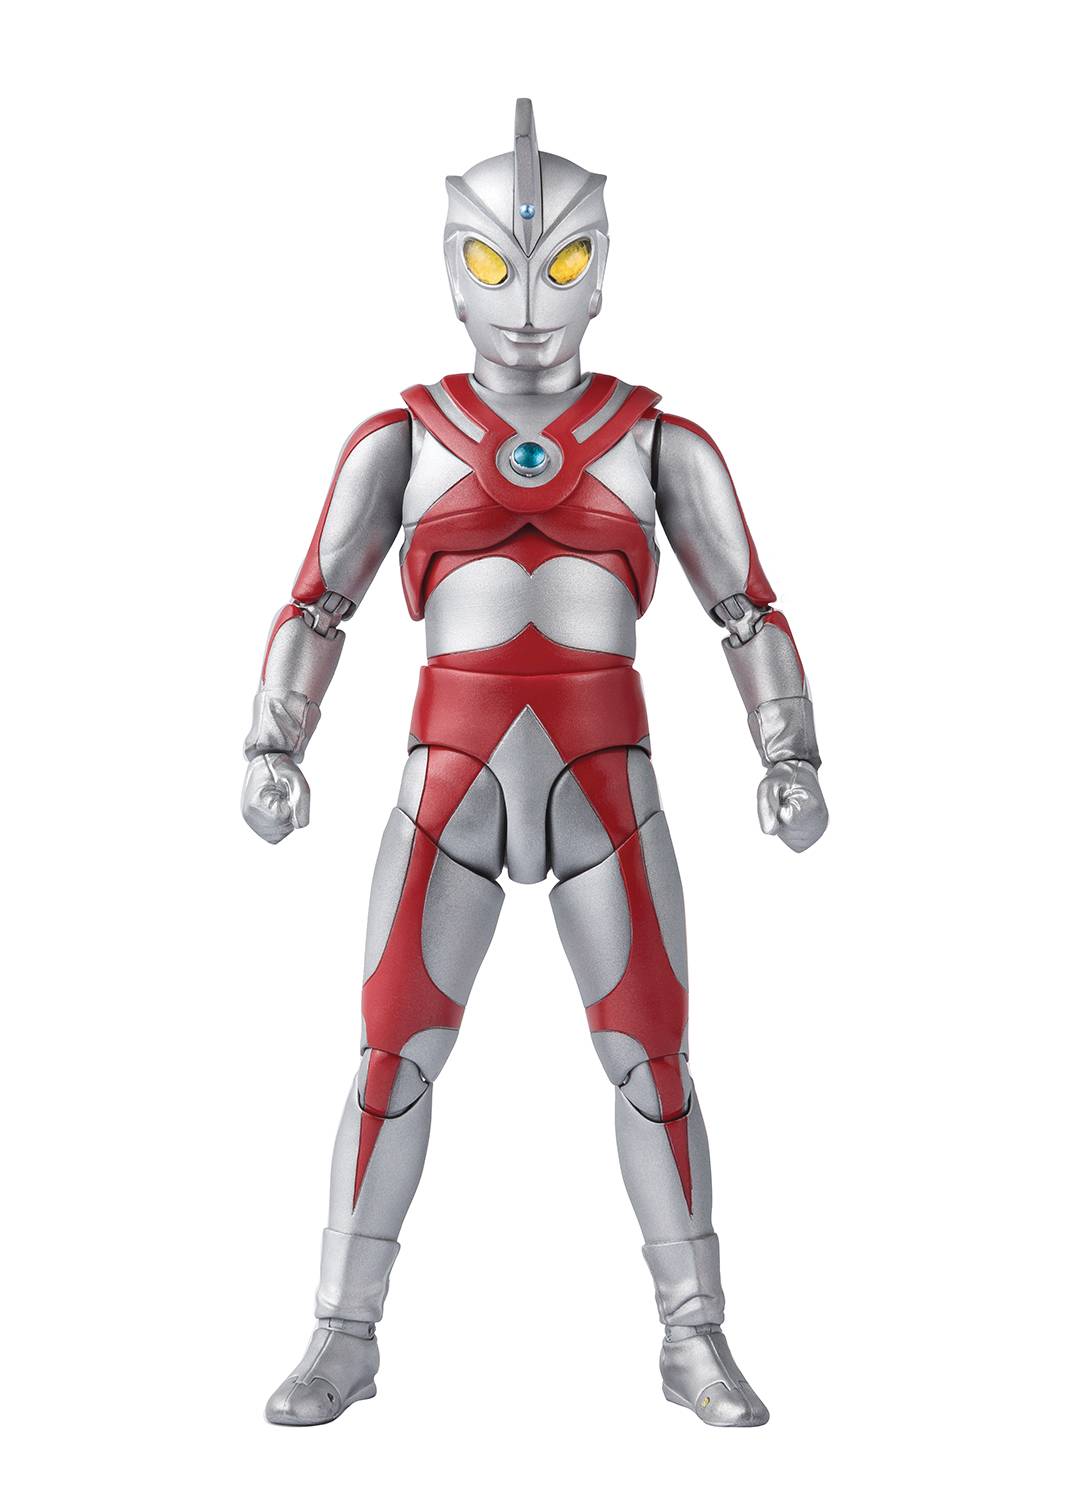 Ultraman ace